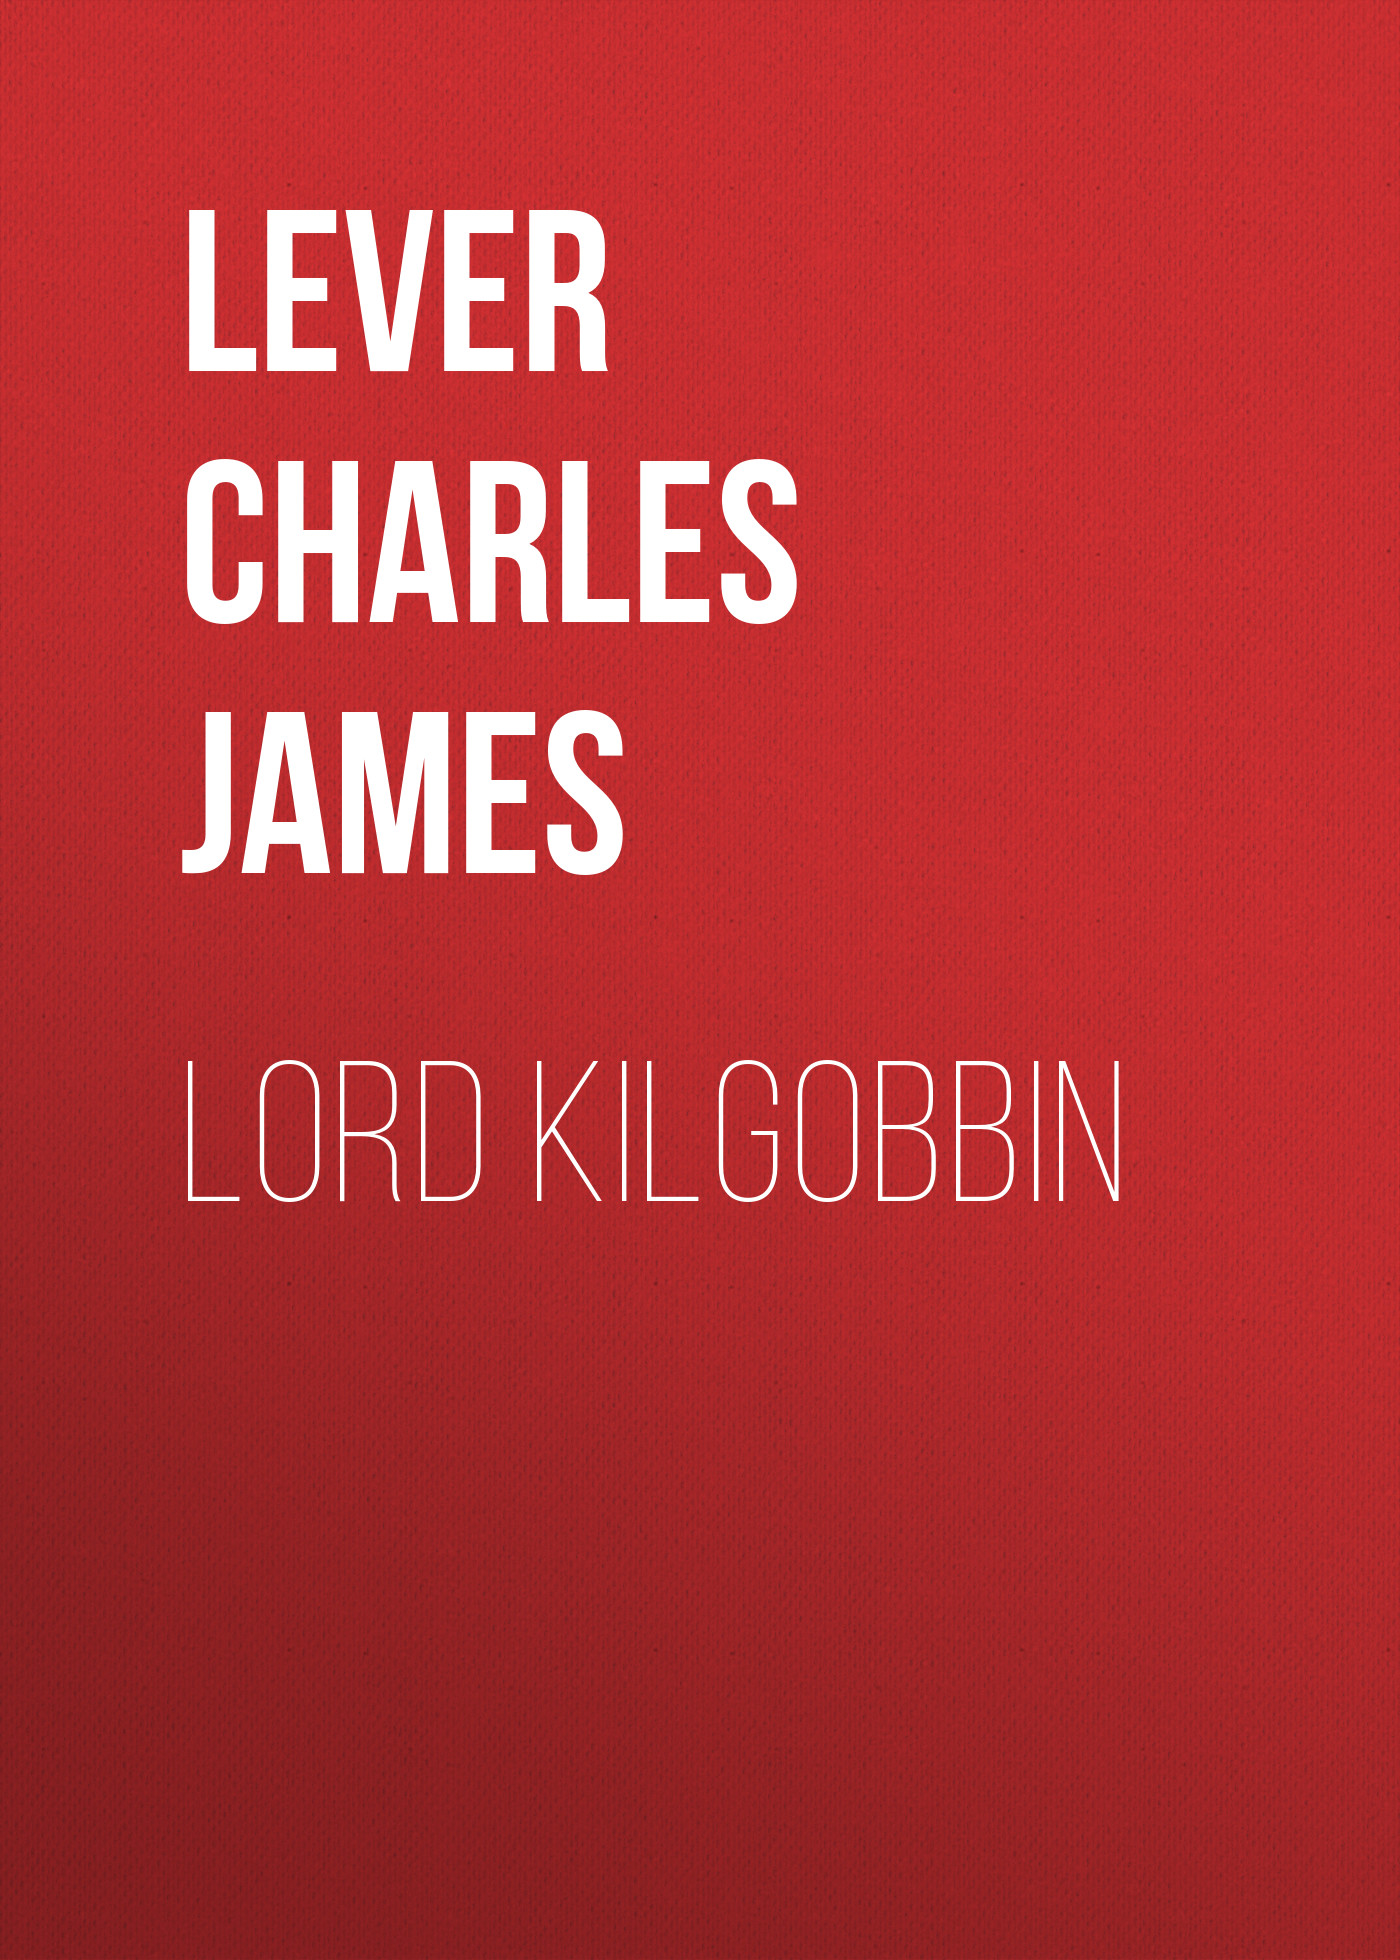 Книга Lord Kilgobbin из серии , созданная Charles Lever, может относится к жанру Литература 19 века, Зарубежная старинная литература, Зарубежная классика. Стоимость электронной книги Lord Kilgobbin с идентификатором 25449740 составляет 0 руб.